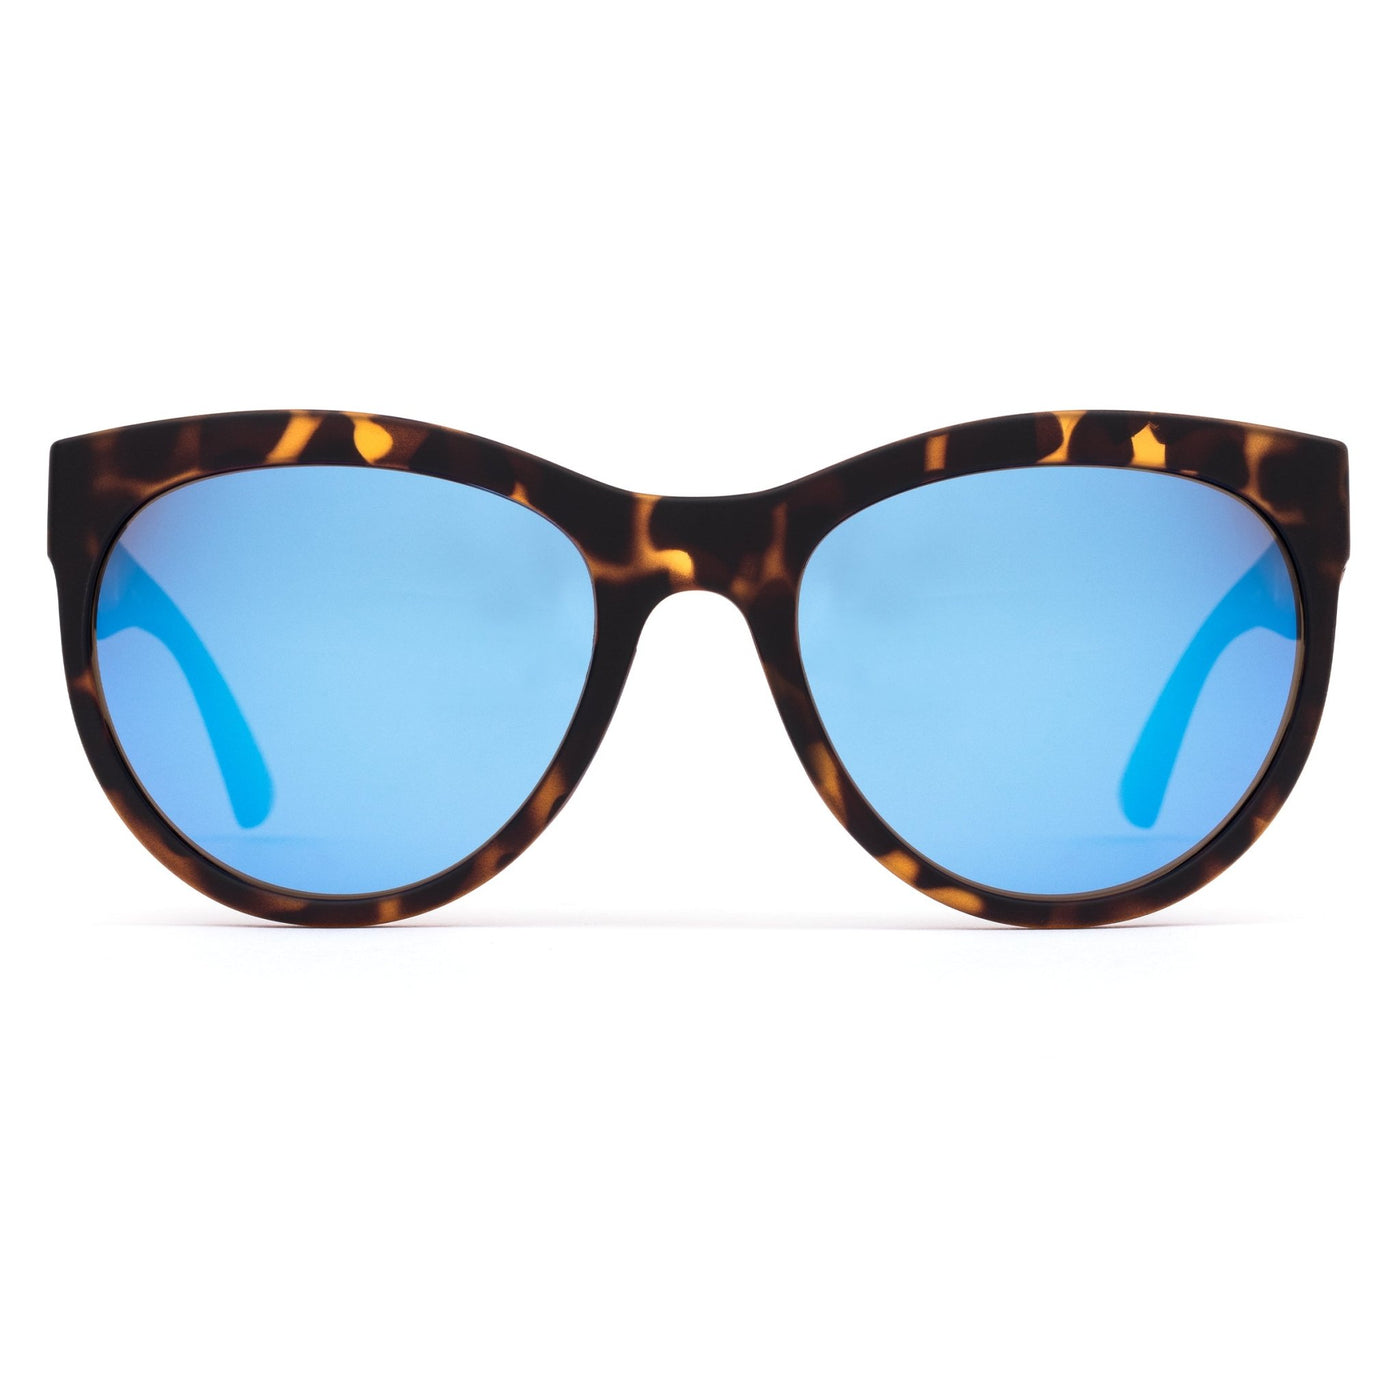 OTIS Eyewear round cat eye sunglasses  with blue reflective lenses